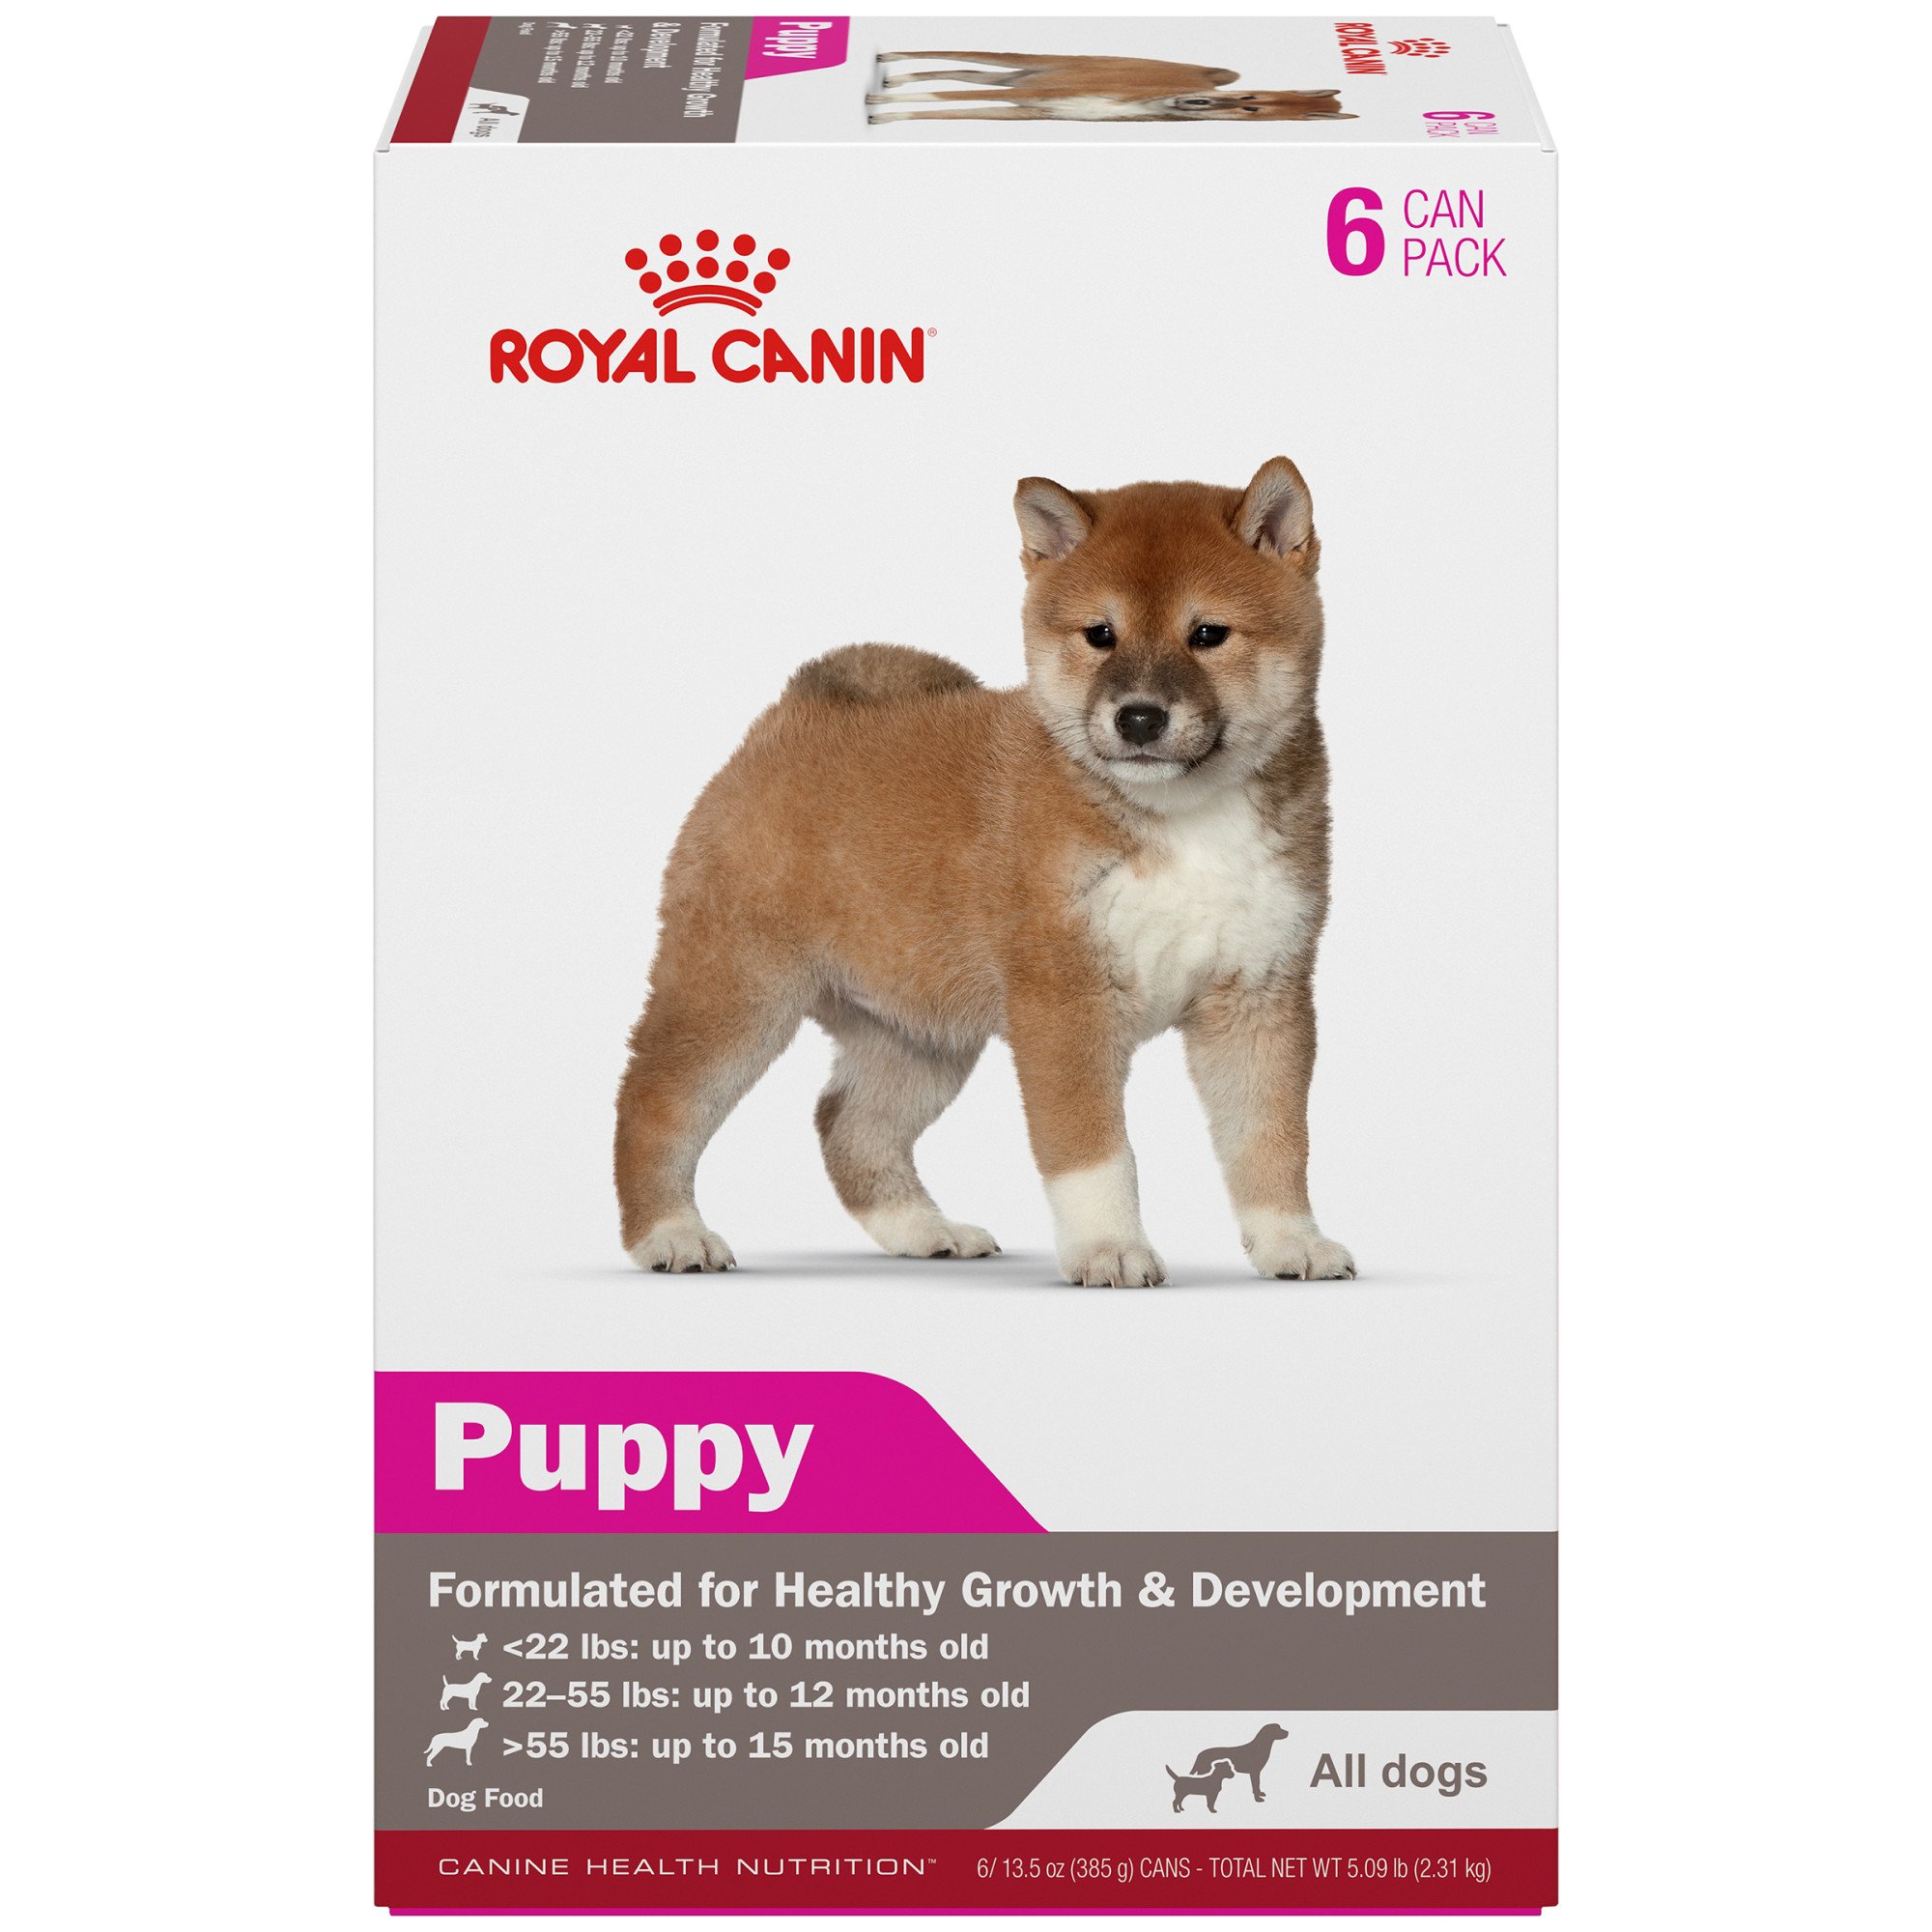 Royal Canin Canine Health Nutrition 